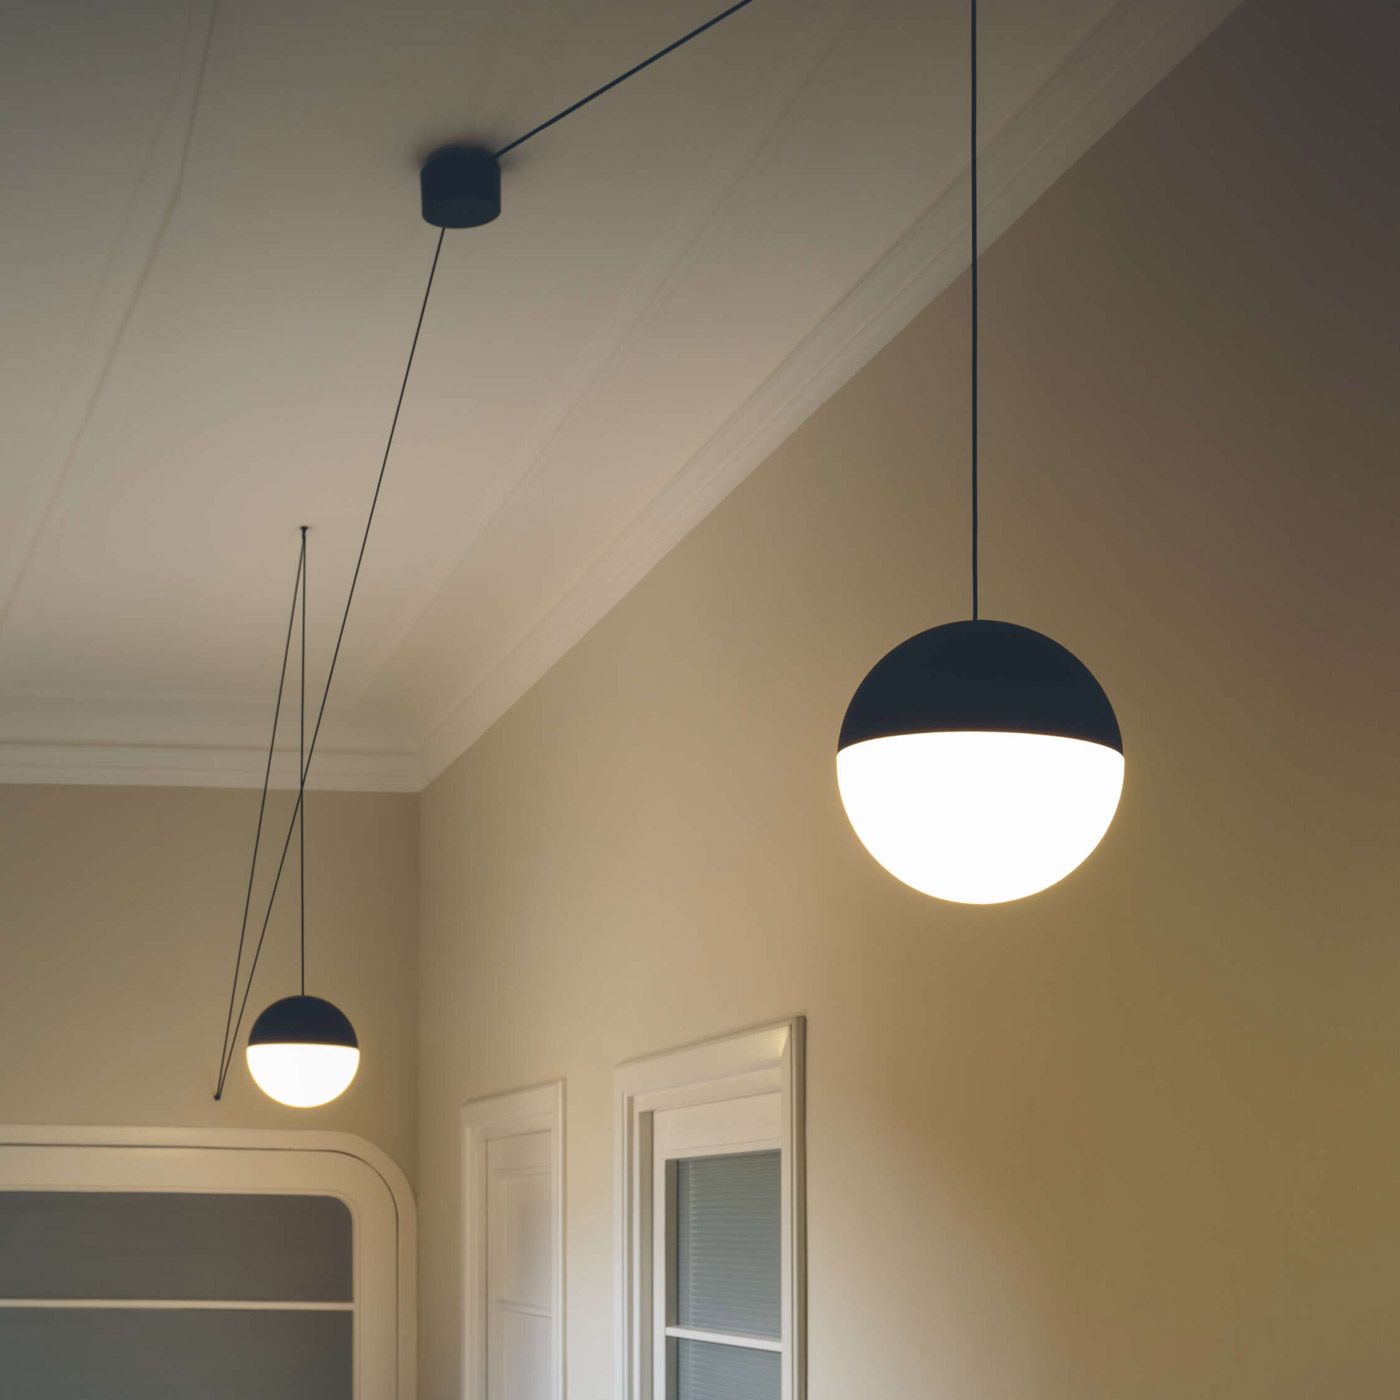 Flos String Light Ball Head Pendant Lamp 22m Sort med sensordæmper på kabel